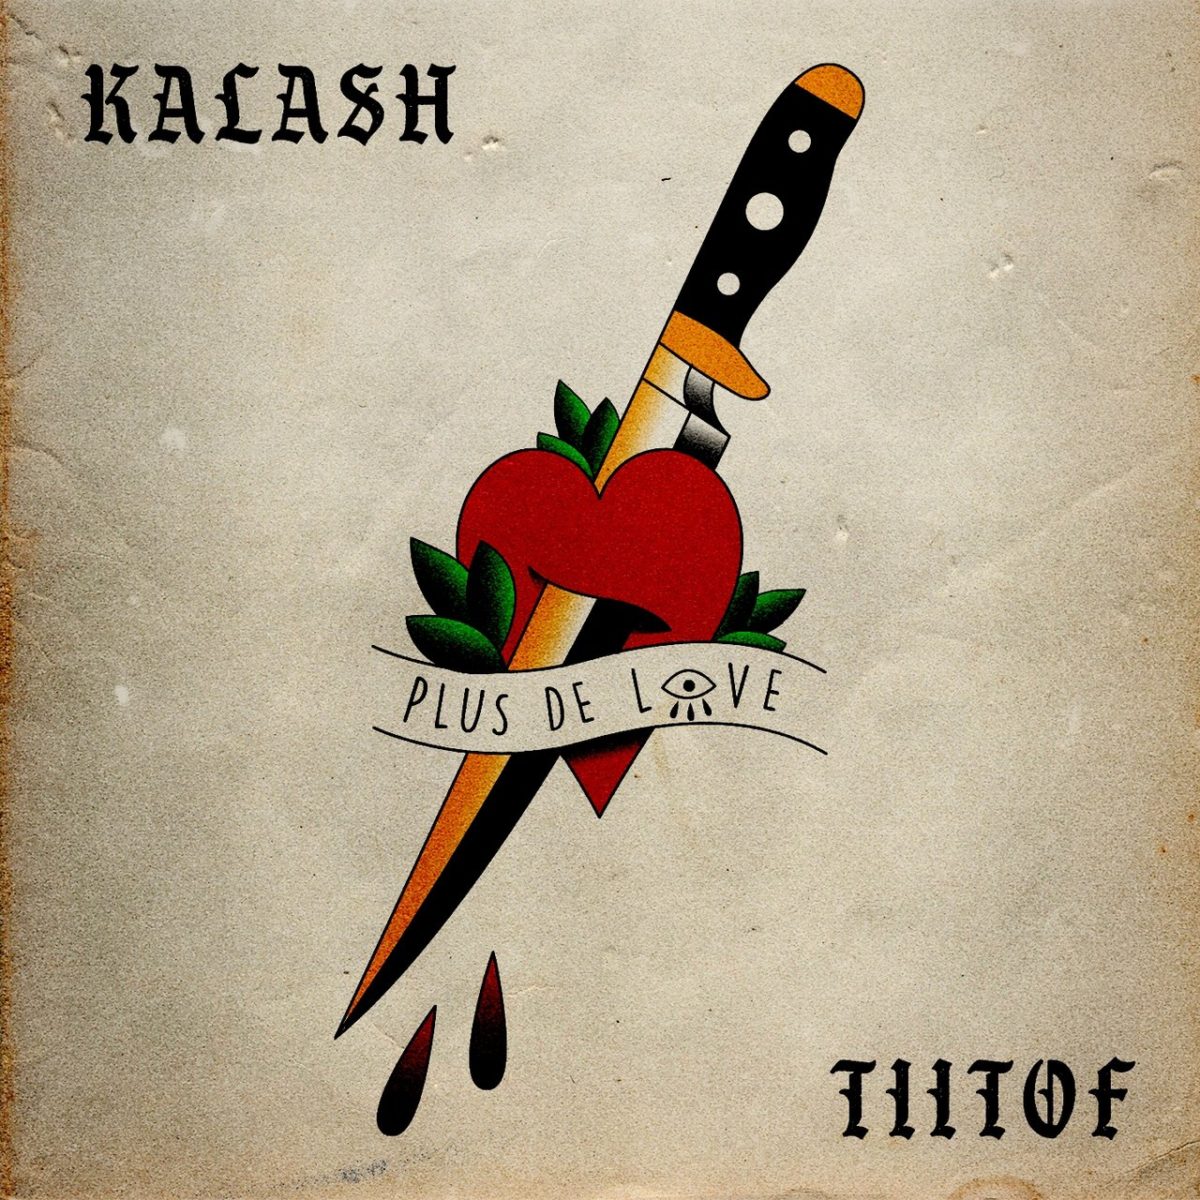 Kalash - Plus De Love (ft. Tiitof) (Cover)